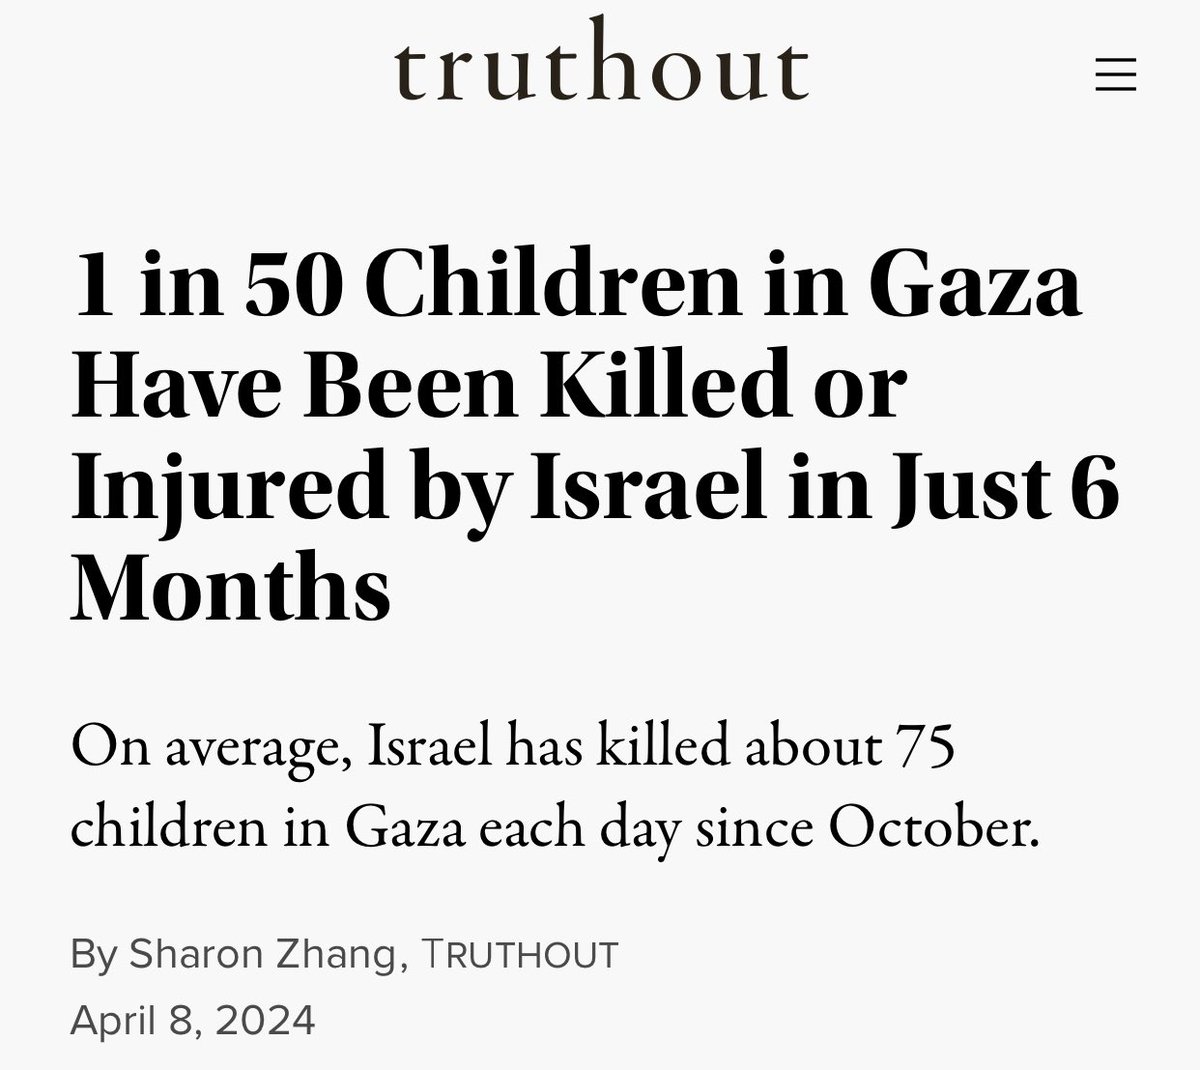 Israel killed or injured 1 in 50 children in Gaza.